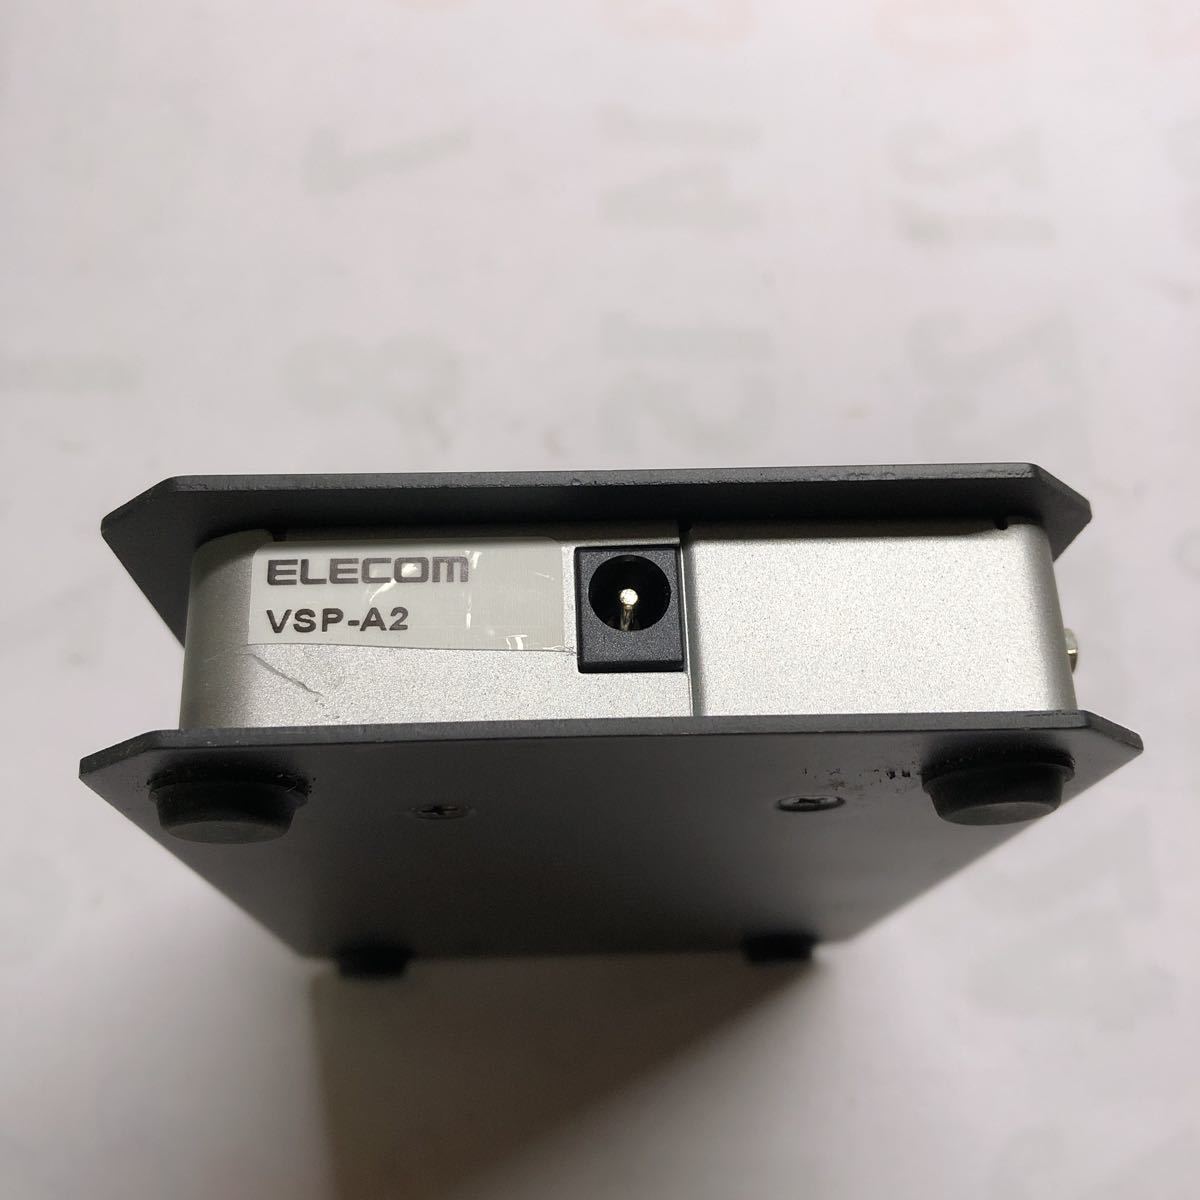 ELECOM Elecom 300MHz correspondence 2 sharing display distributor VSP-A2 /3